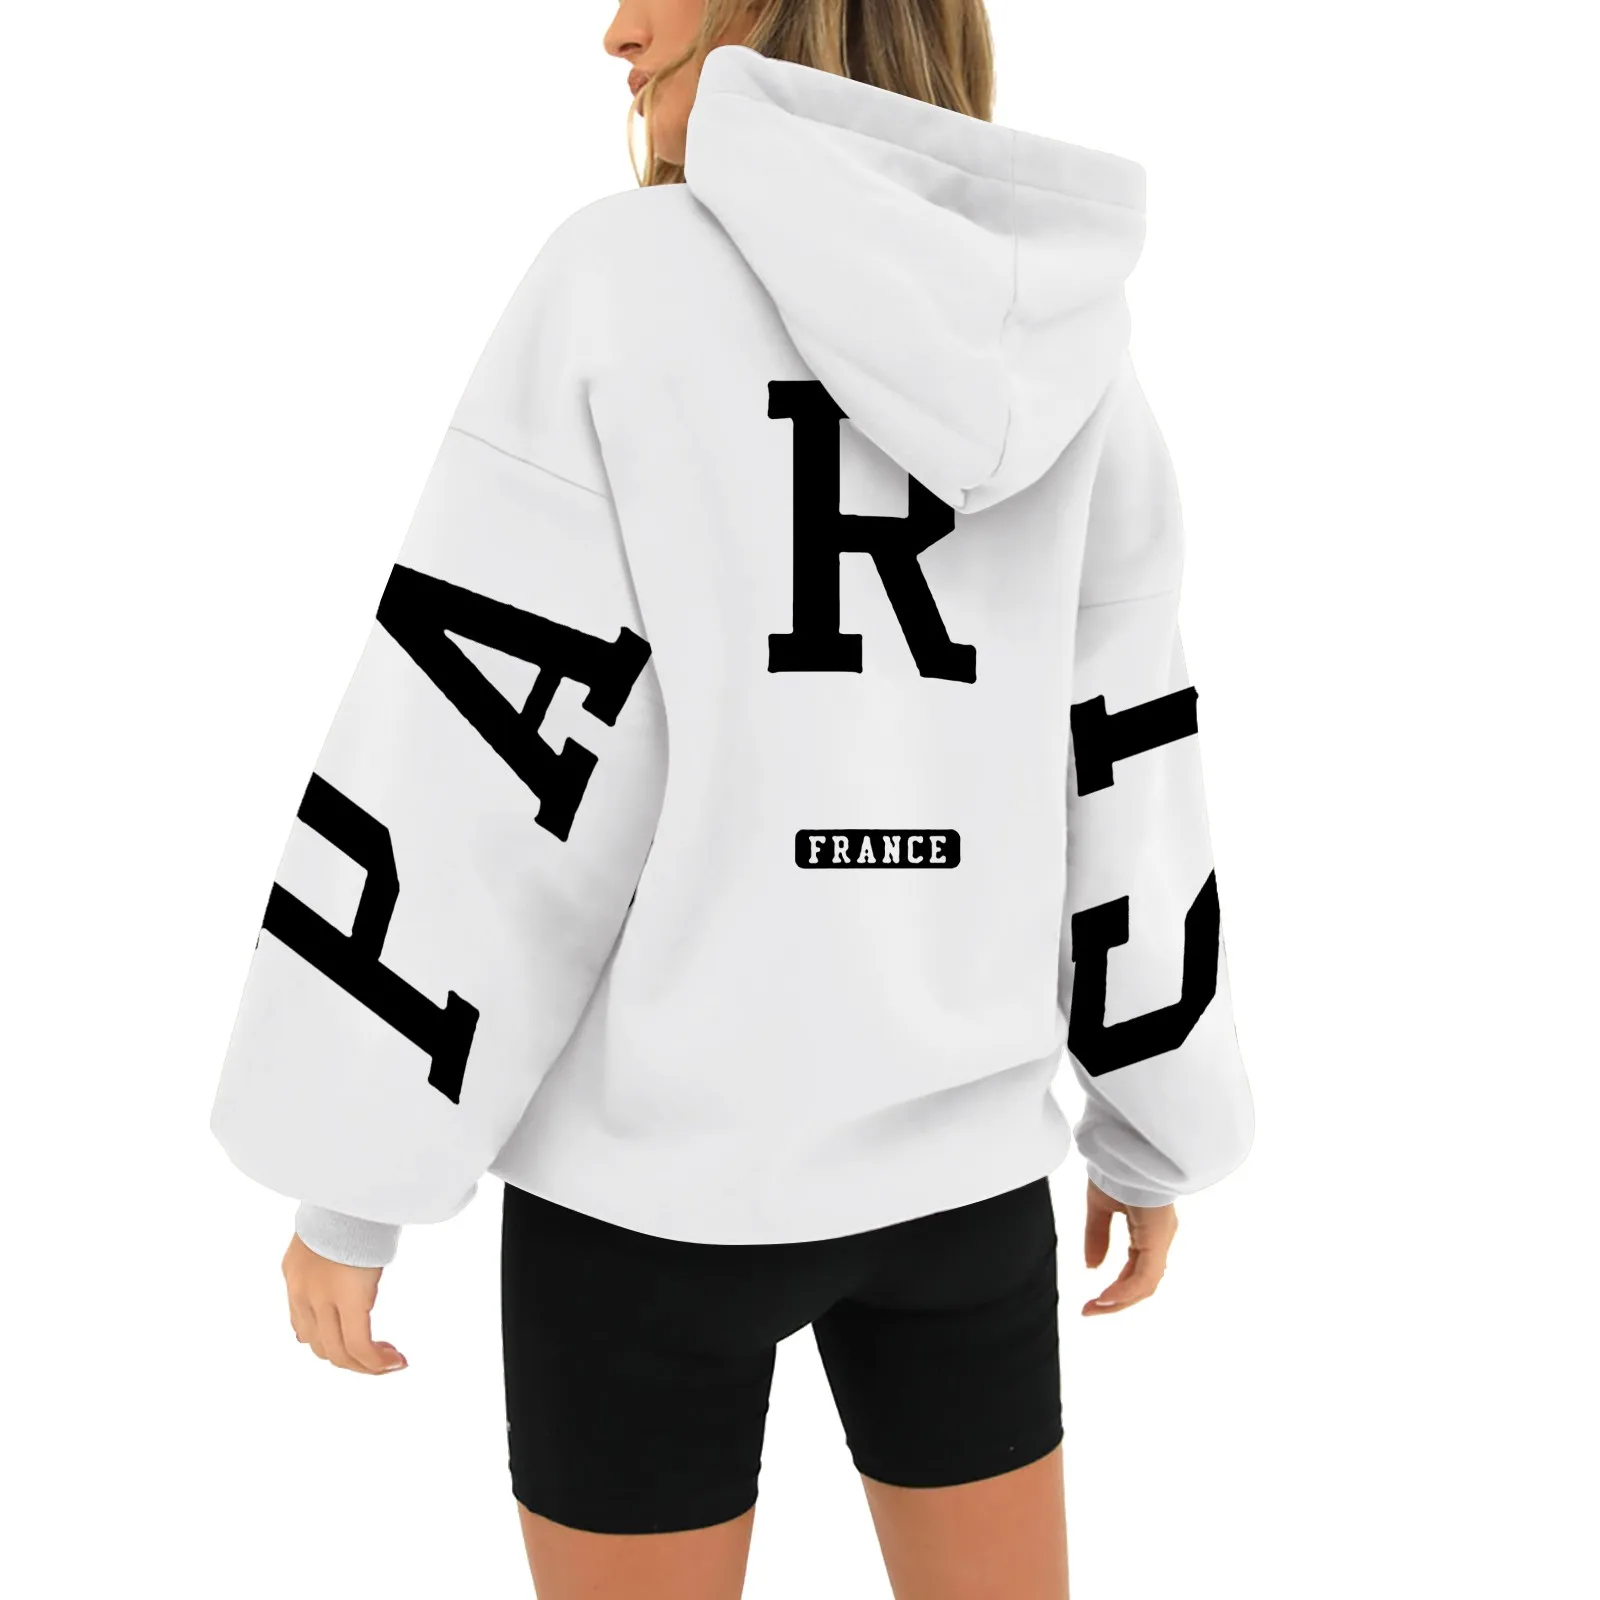 Paris France Printed Sweatshirt Hoodie for Women - true deals club